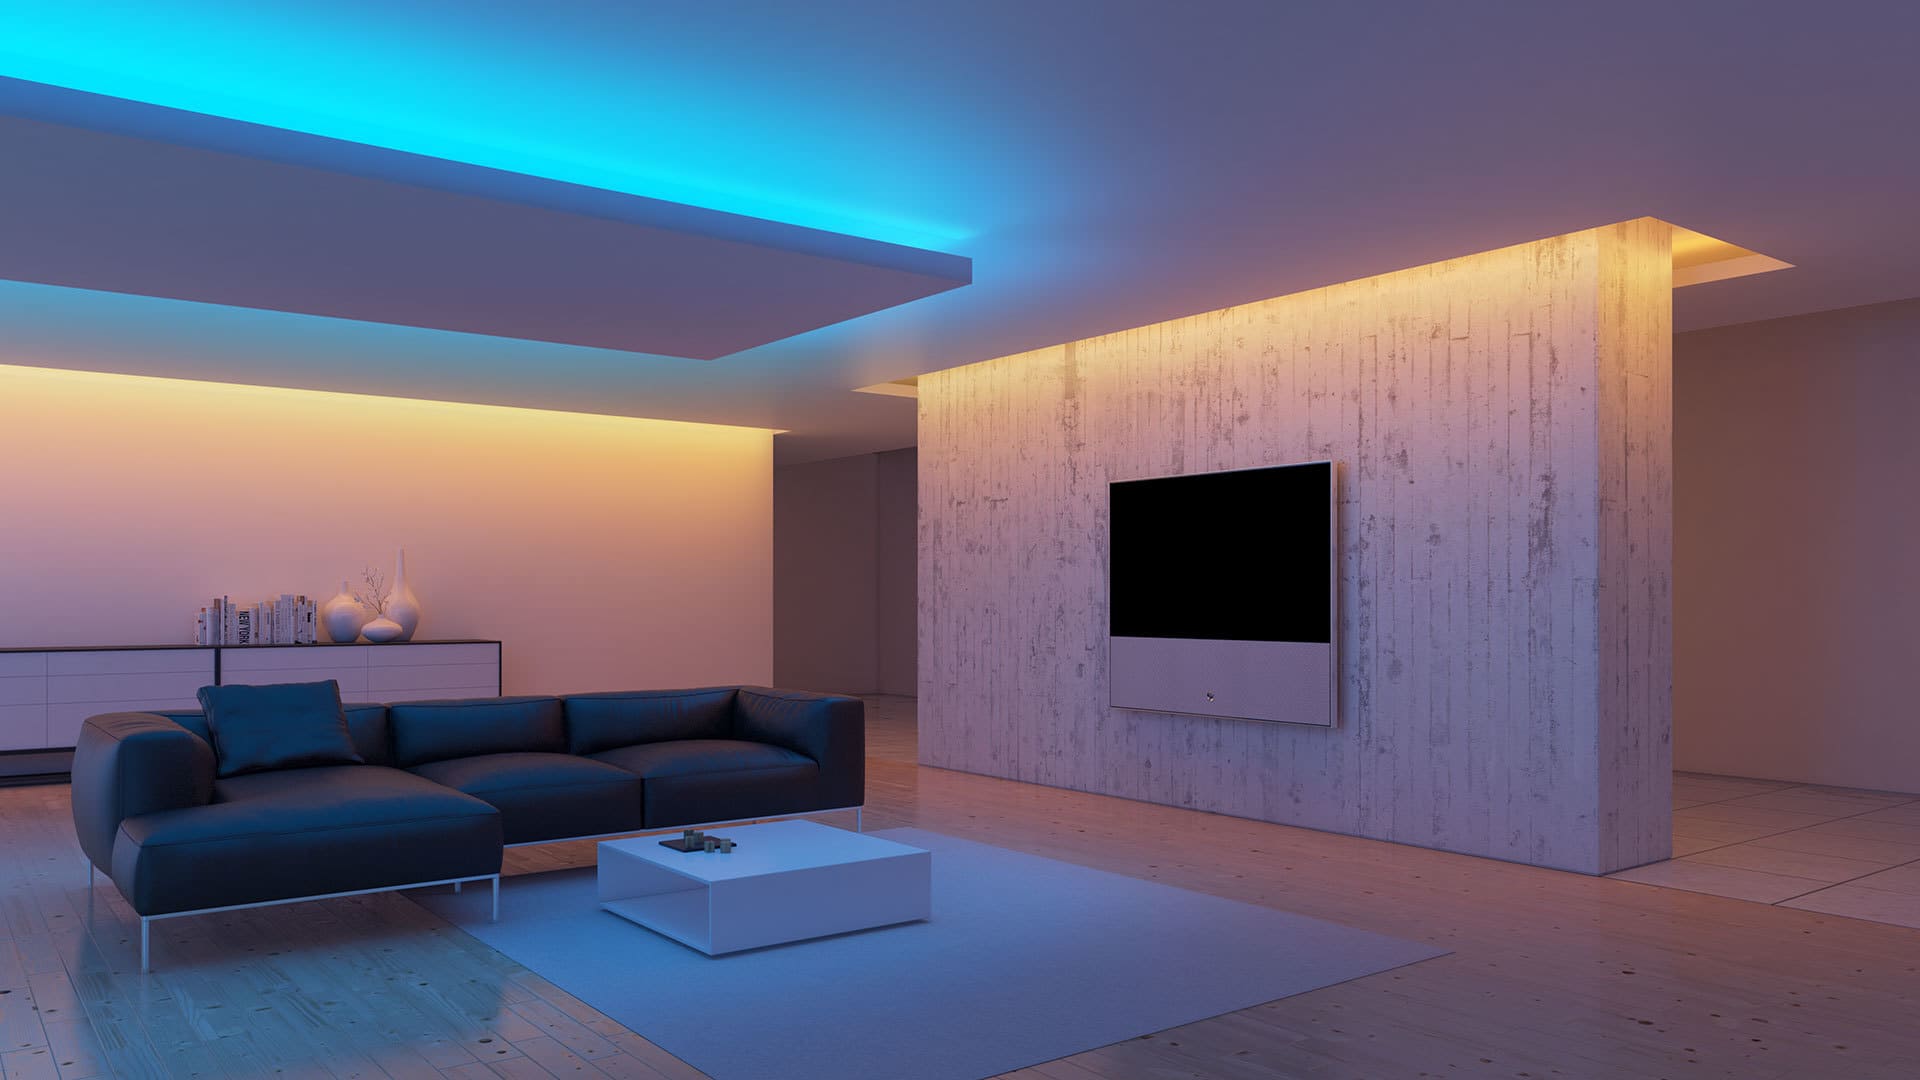 Делаем потолочный плинтус с подсветкой — элемент дизайна многоуровневых потолков